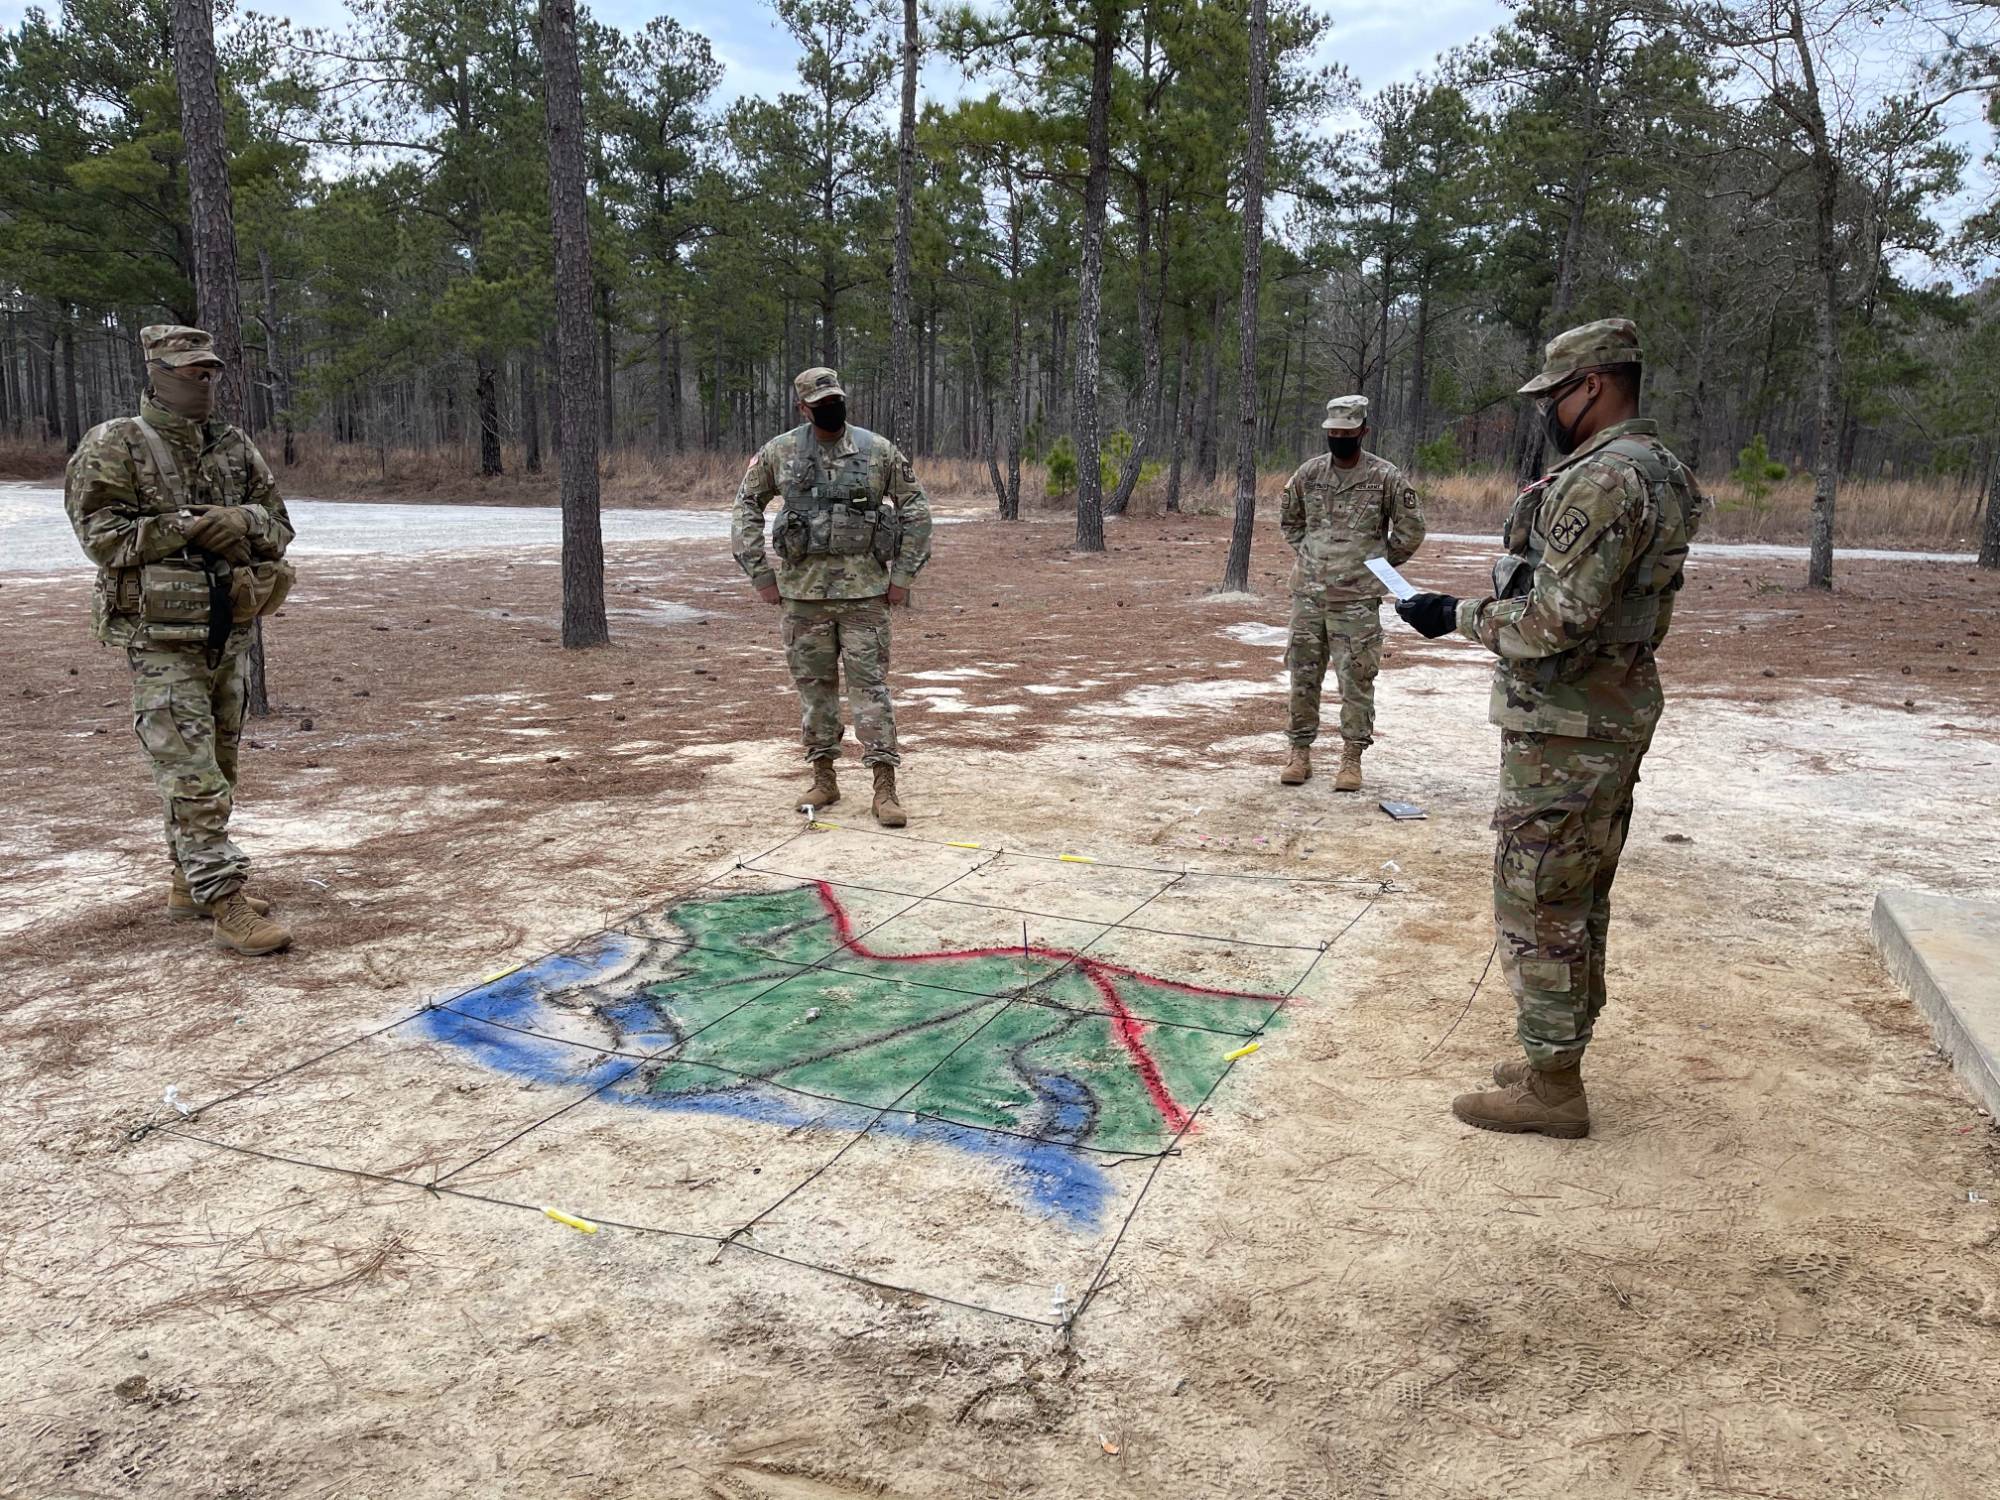 Army ROTC Land Navigation 2021